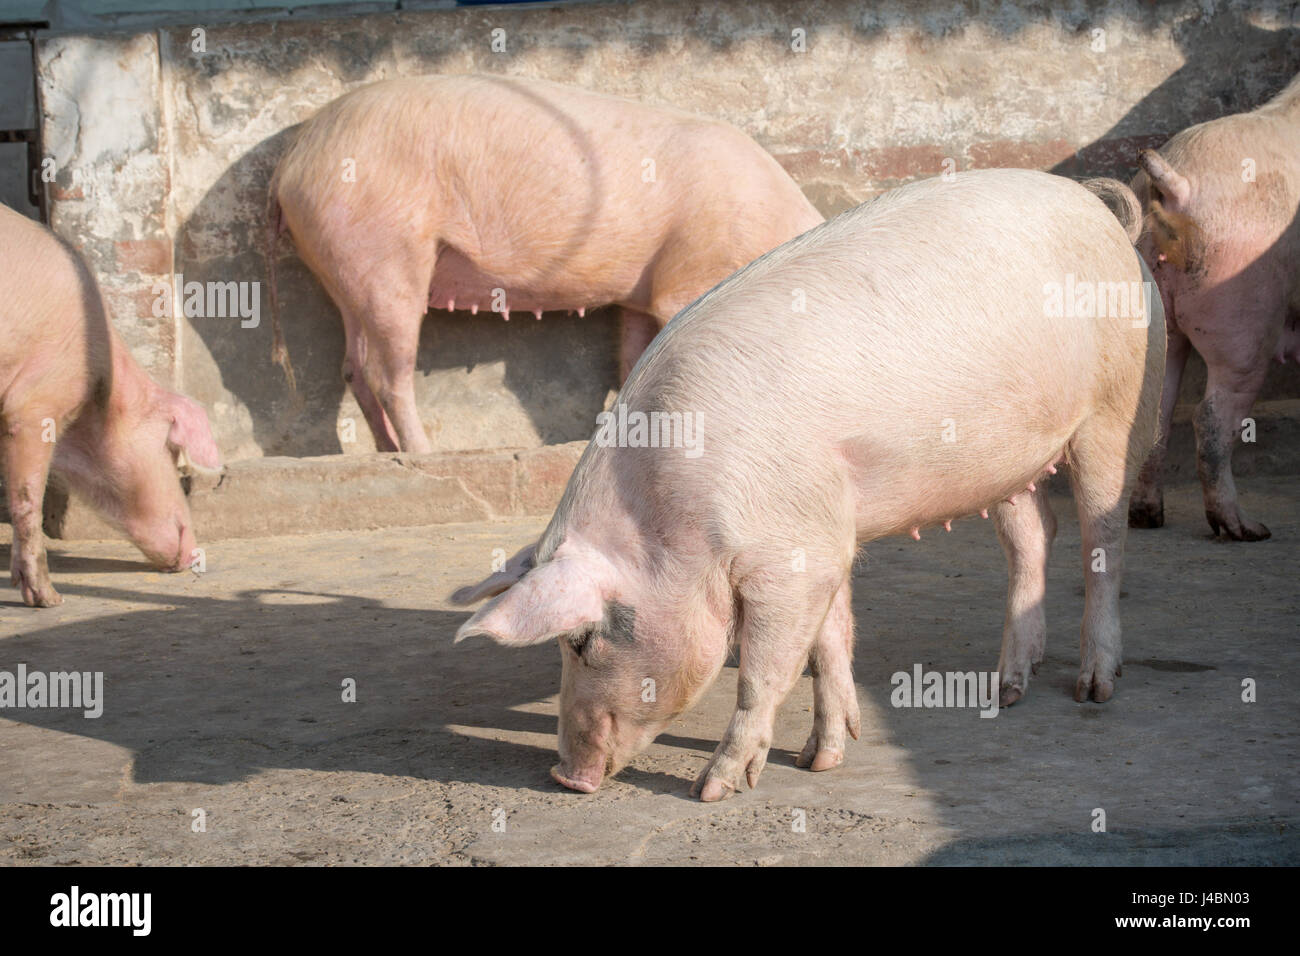 Les porcs renifler autour de leur enclos dans une ferme de la province du Punjab, en Inde. Banque D'Images